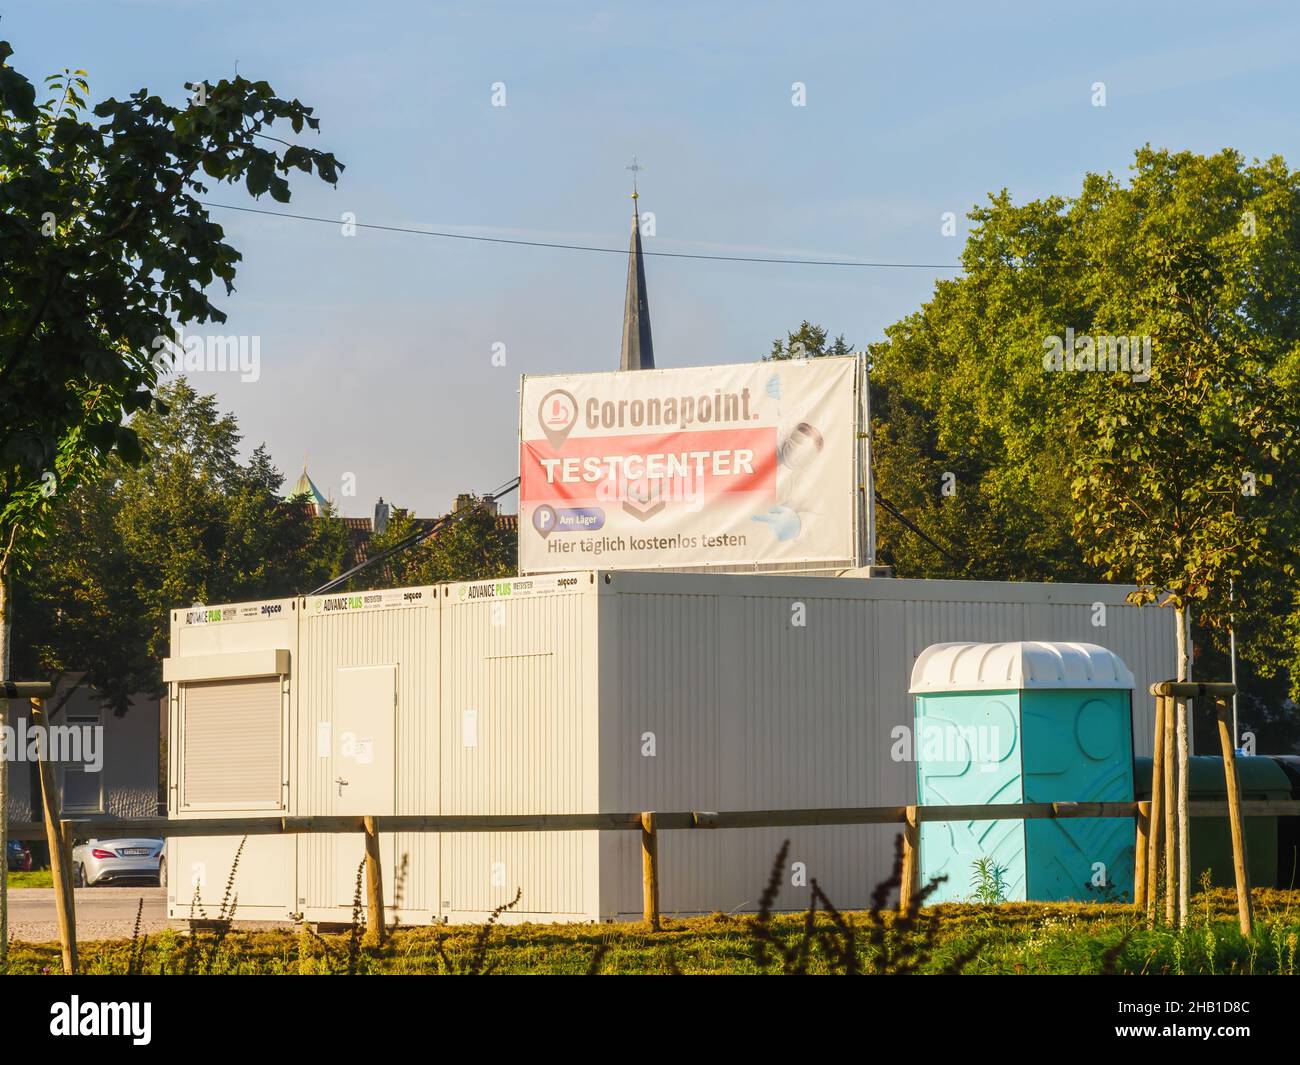 Coronapoint Testcenter en la ciudad alemana de Kehl con la aguja de la concha en el fondo Foto de stock